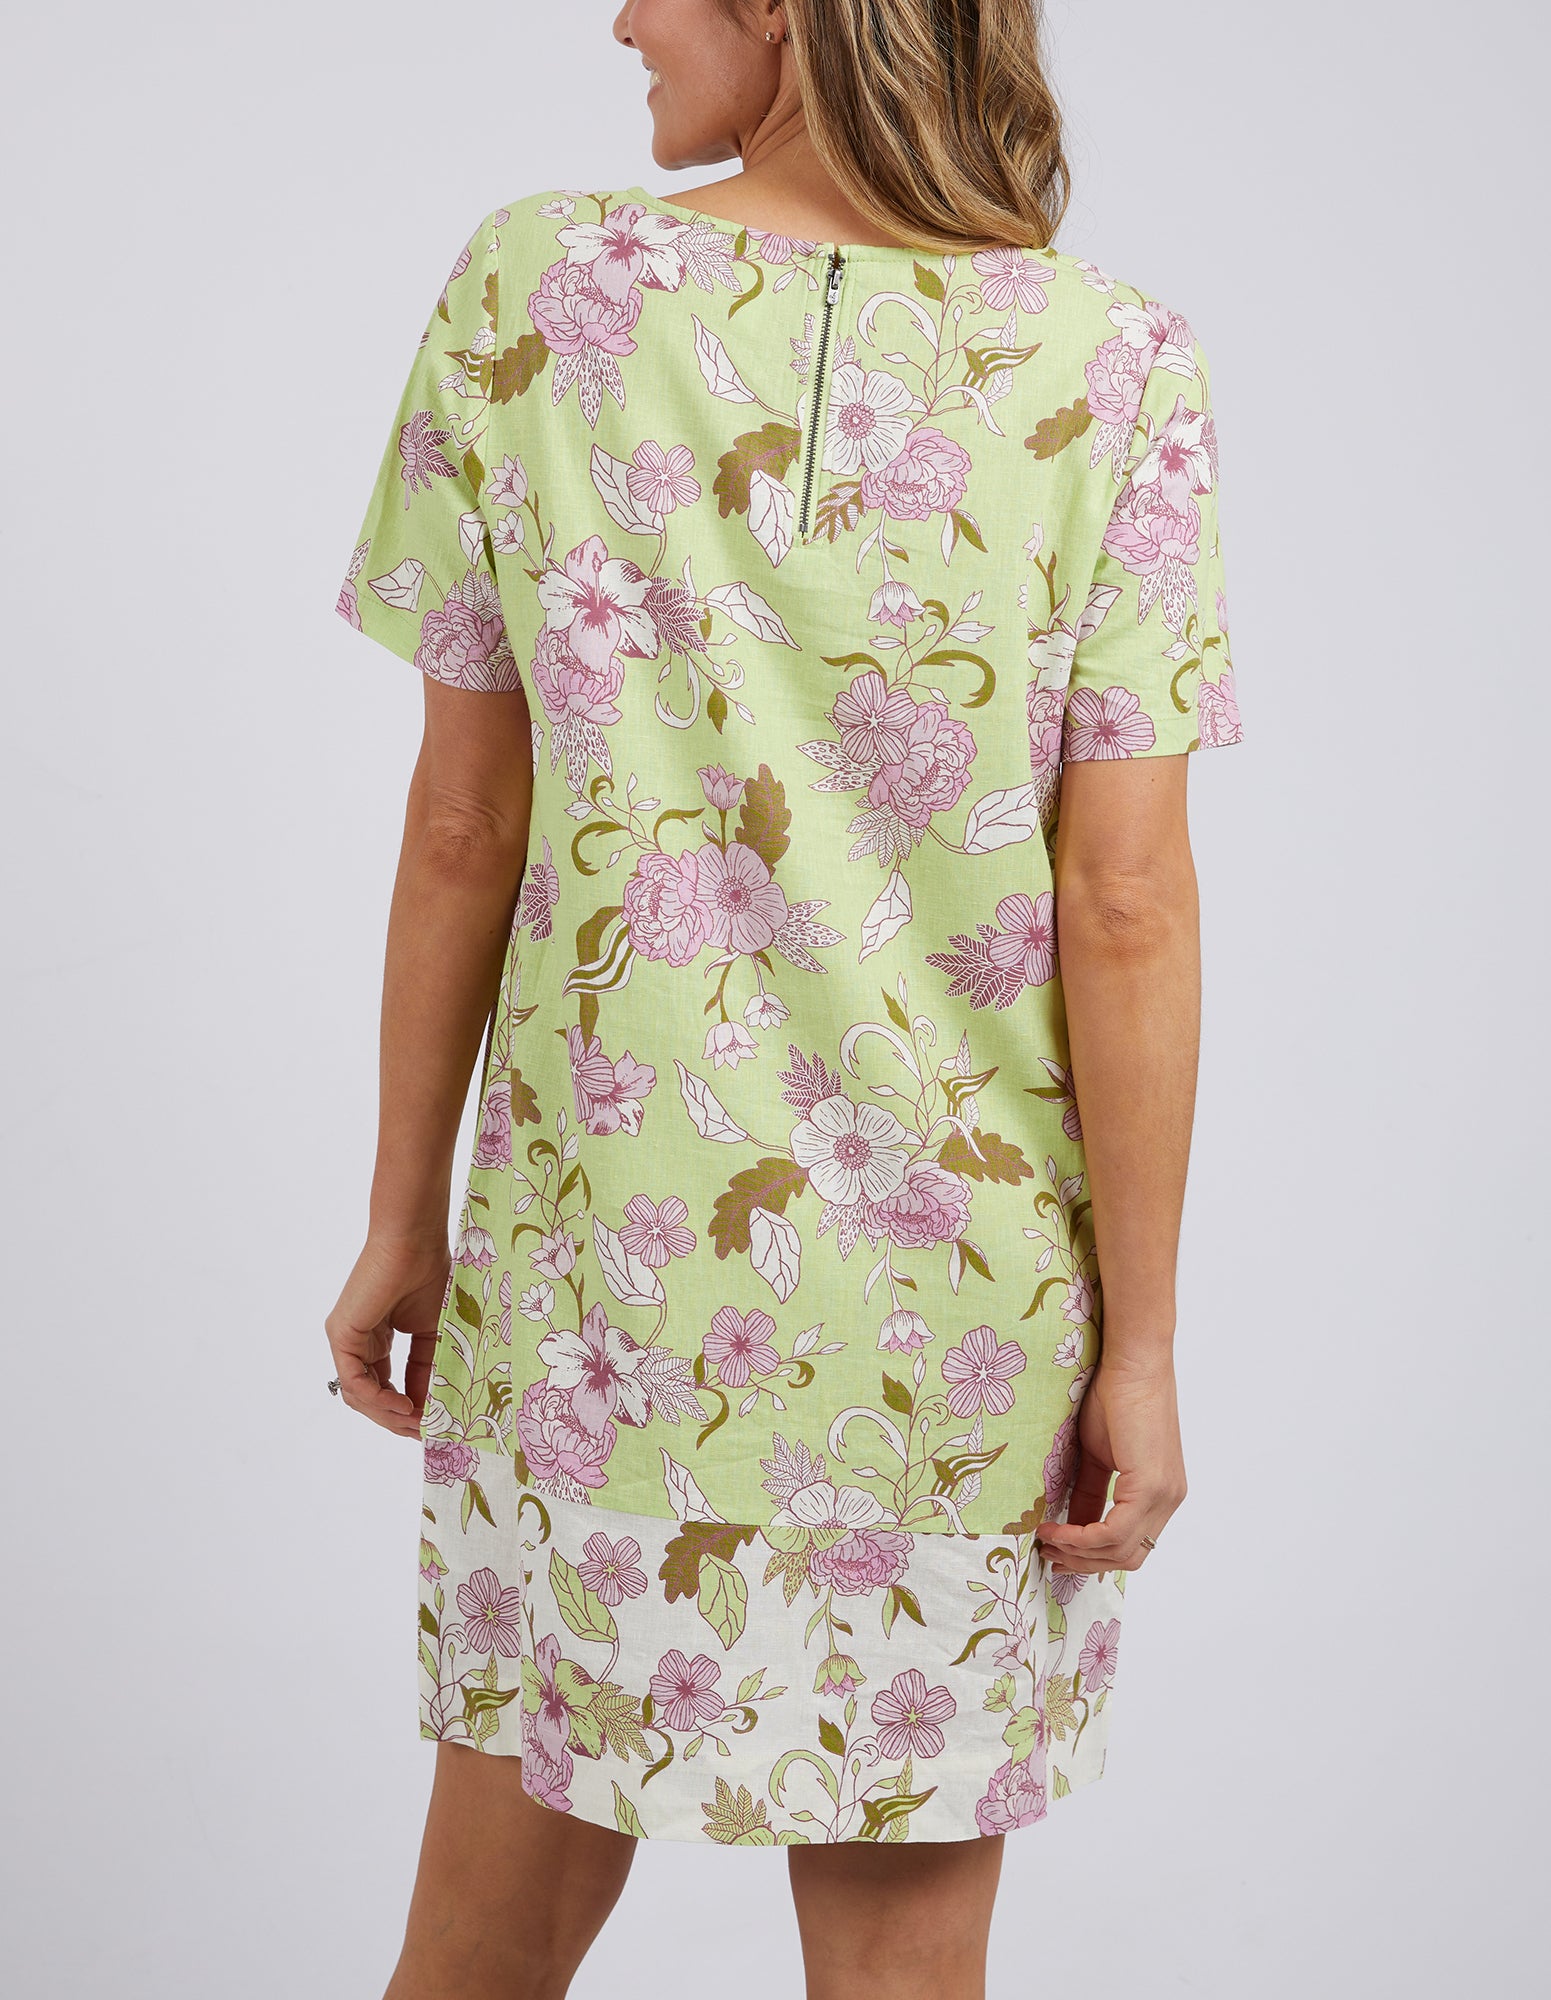 Emmeline Shift Dress Spliced Floral Print